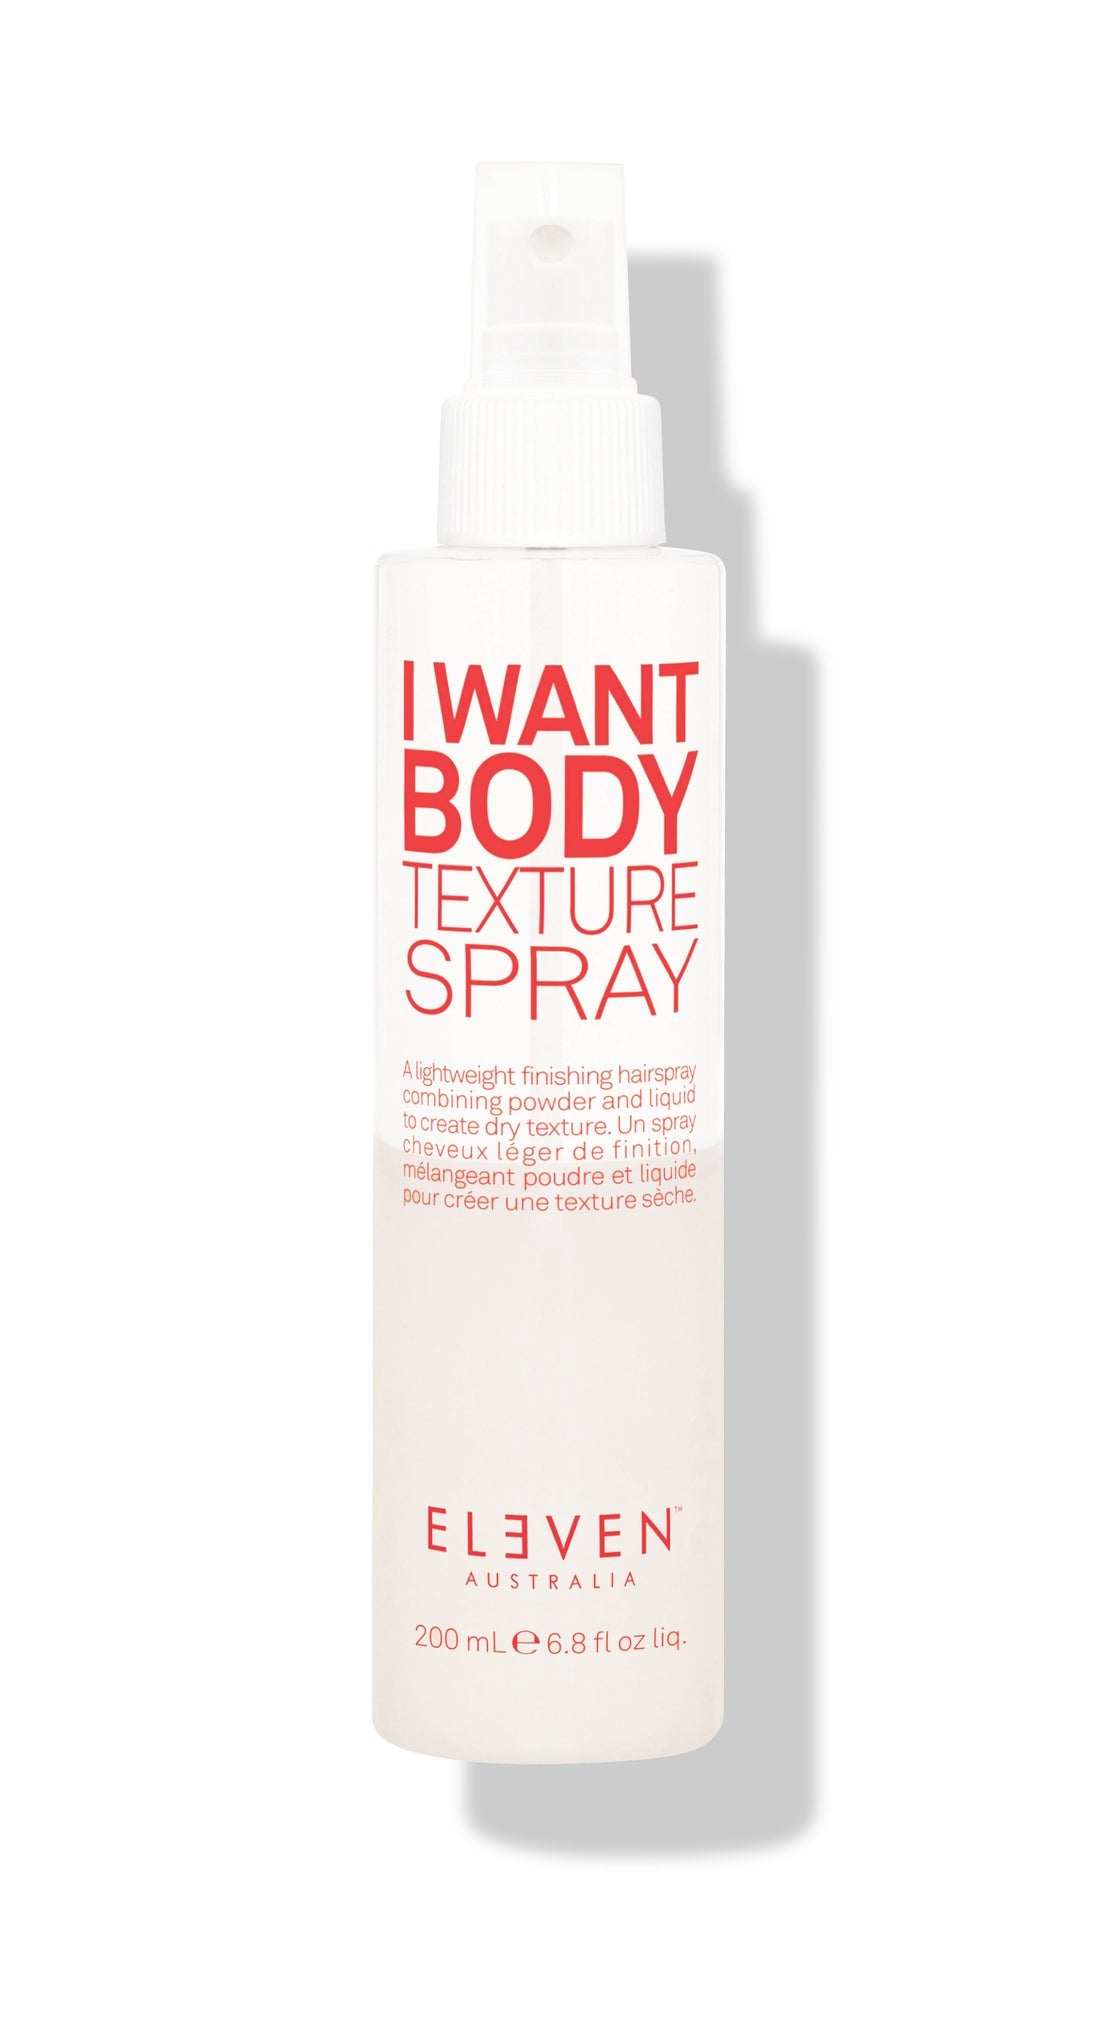 I want body texture spray